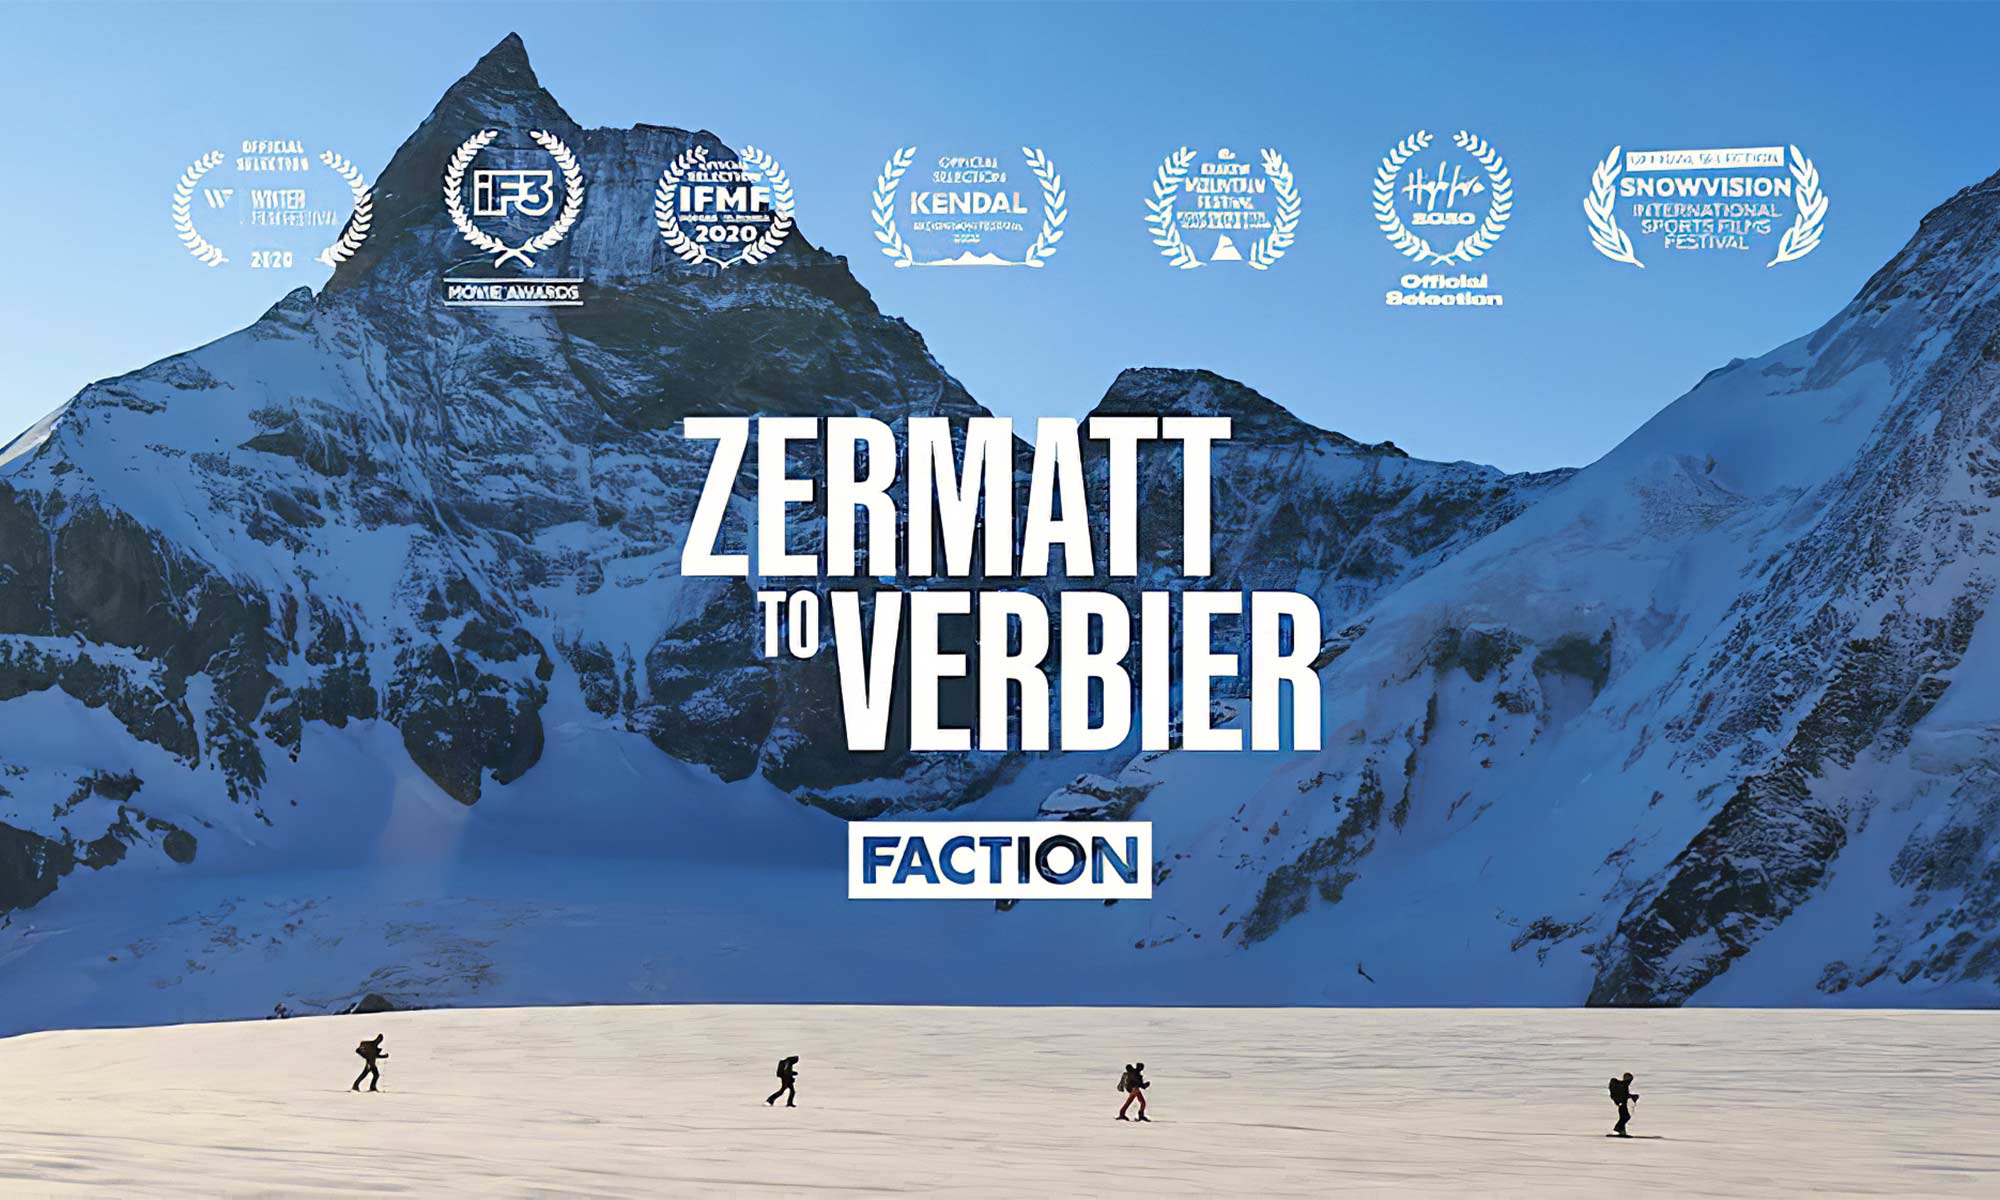 Zermatt to Verbier